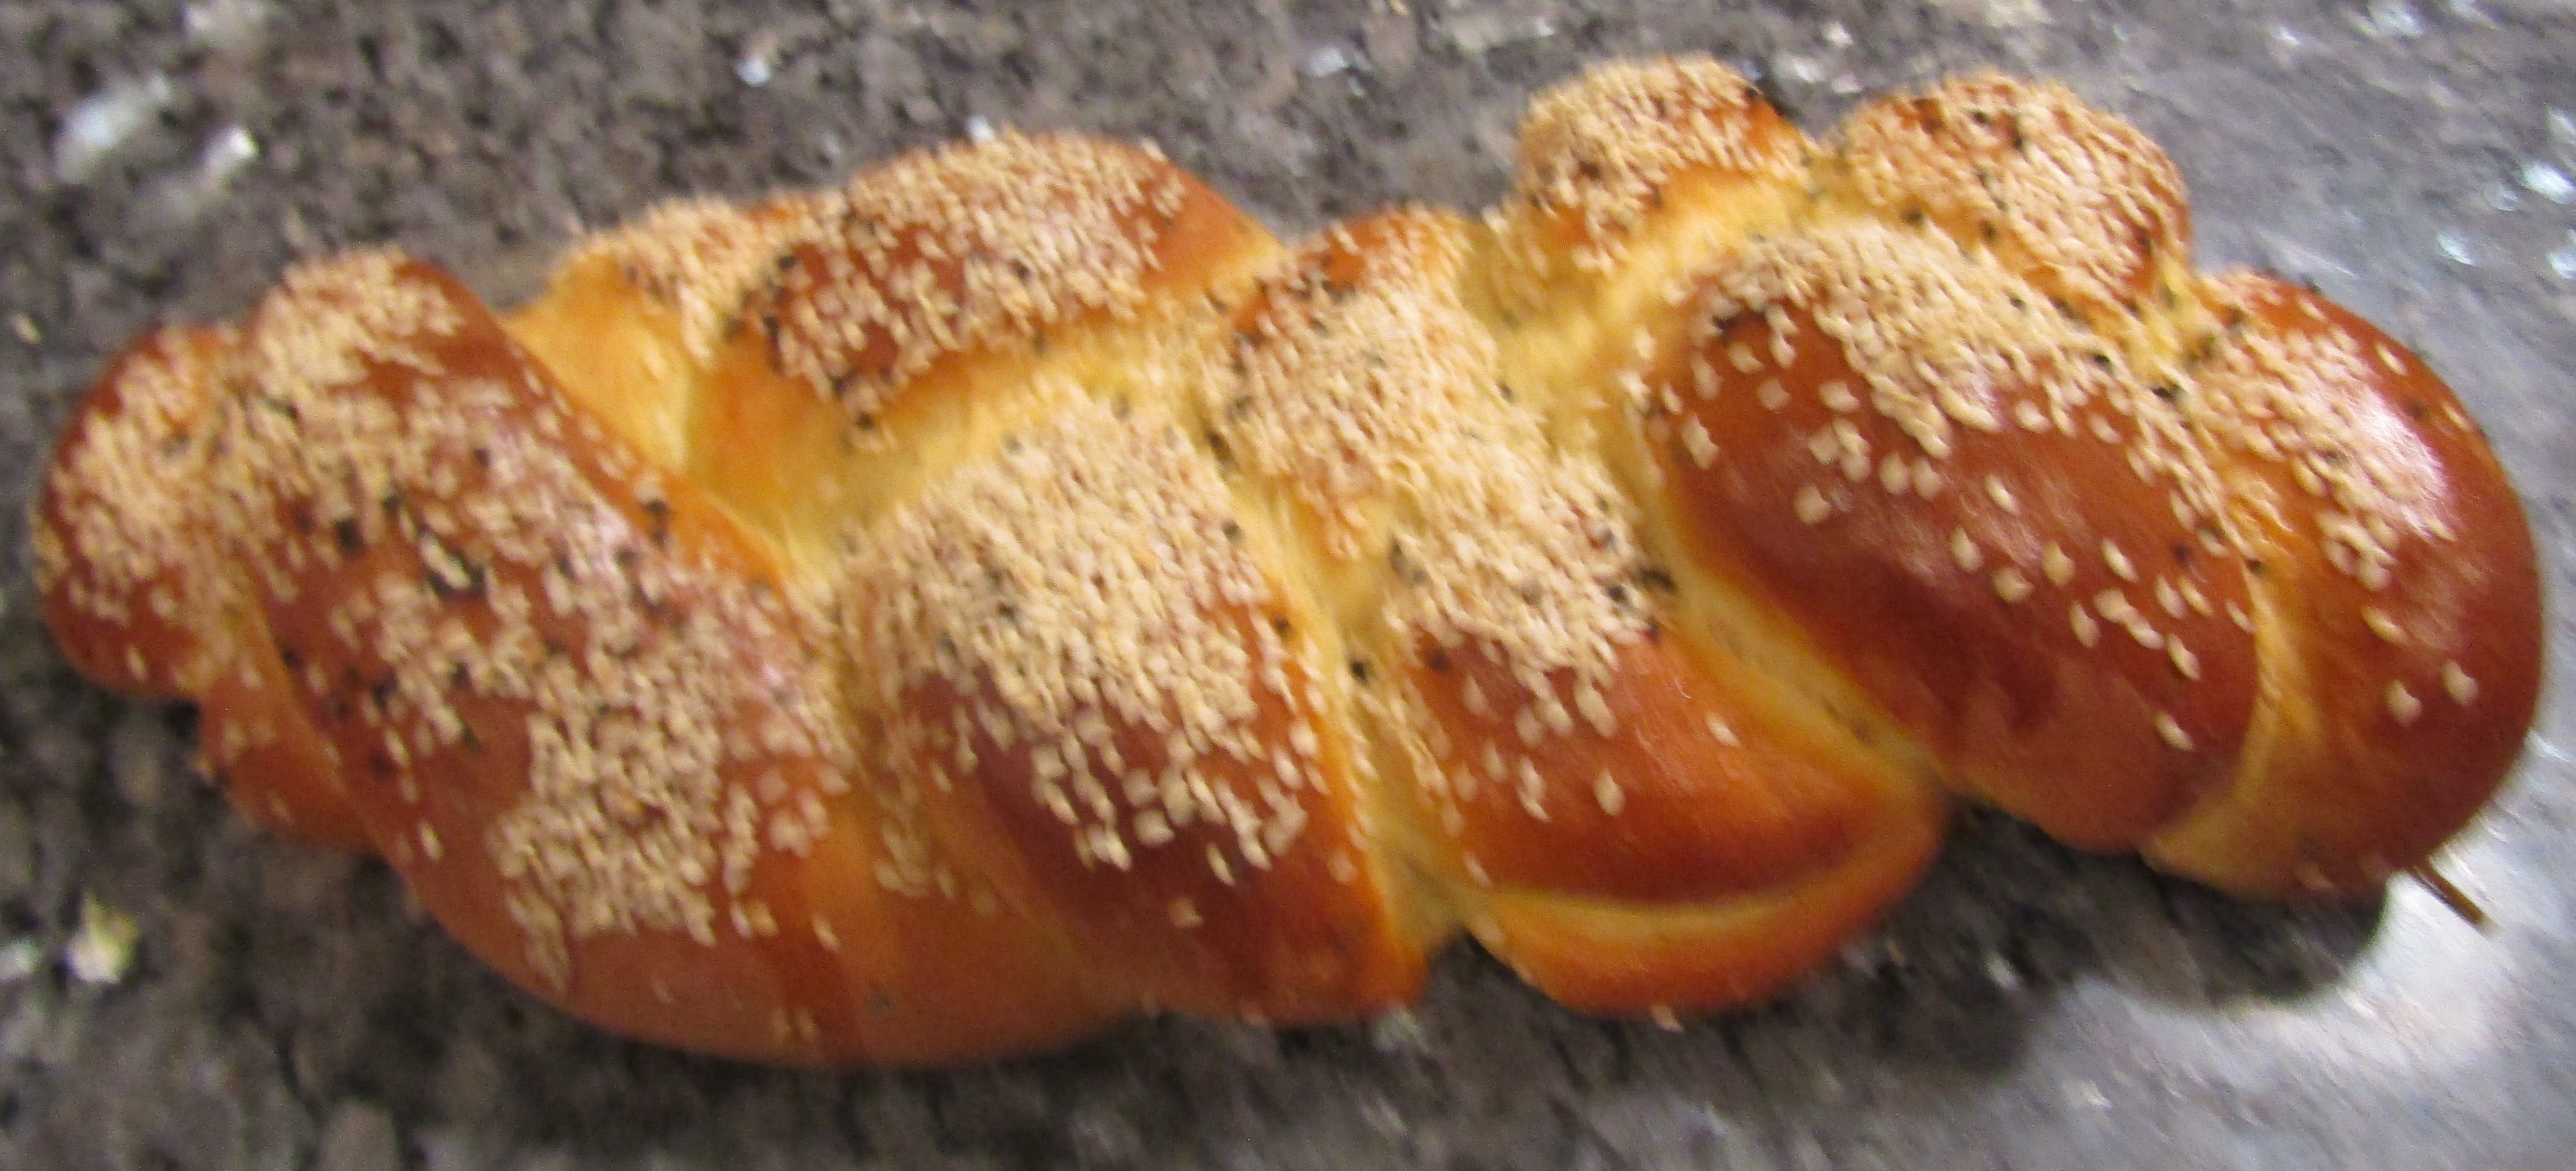 Armenian Easter Bread Recipe